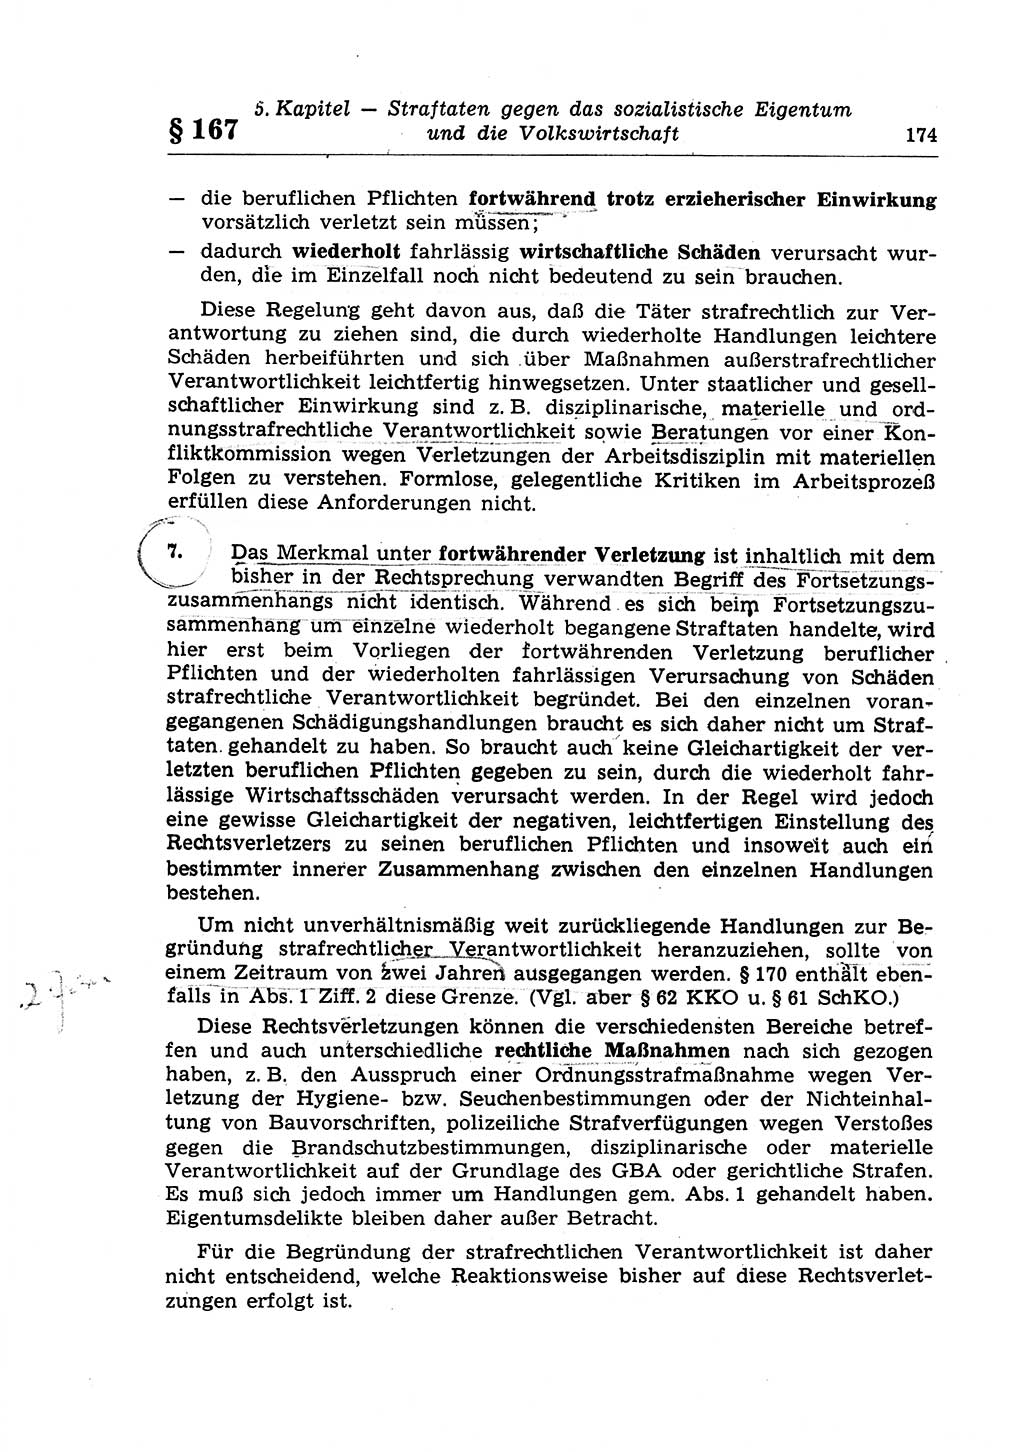 Strafrecht der Deutschen Demokratischen Republik (DDR), Lehrkommentar zum Strafgesetzbuch (StGB), Besonderer Teil 1970, Seite 174 (Strafr. DDR Lehrkomm. StGB BT 1970, S. 174)